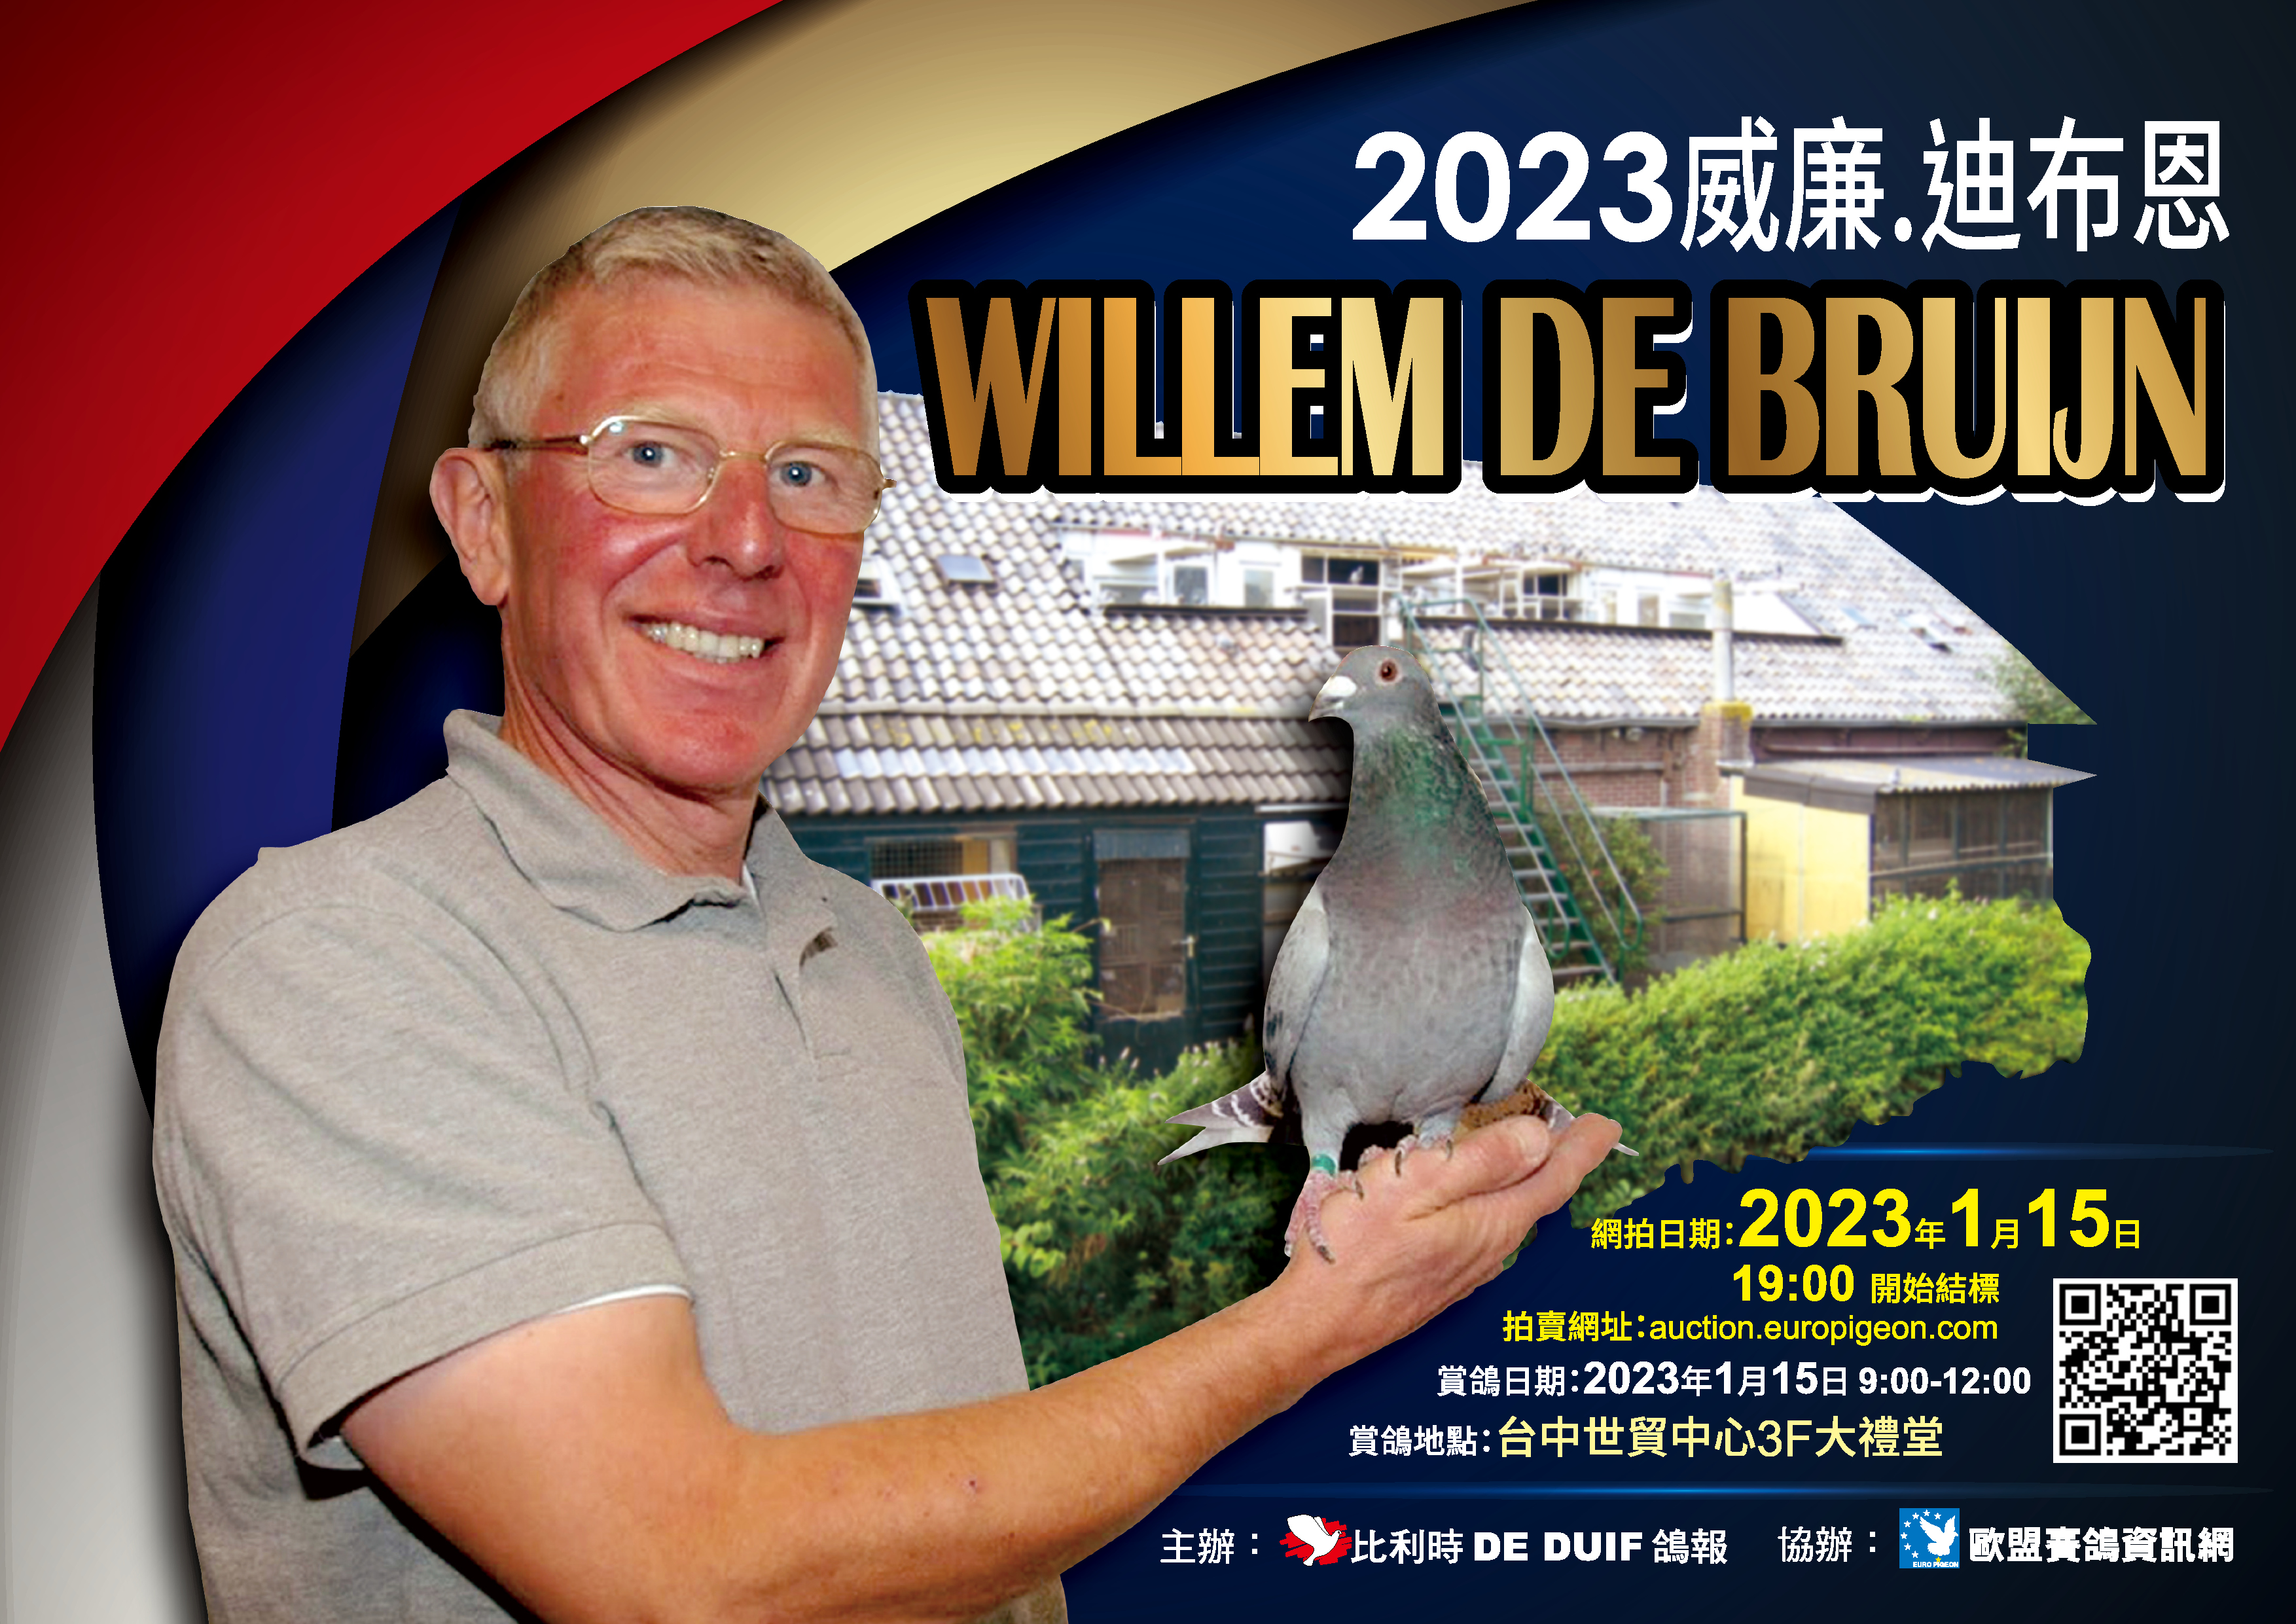 2023 Willem de Bruijn auction in Taiwan